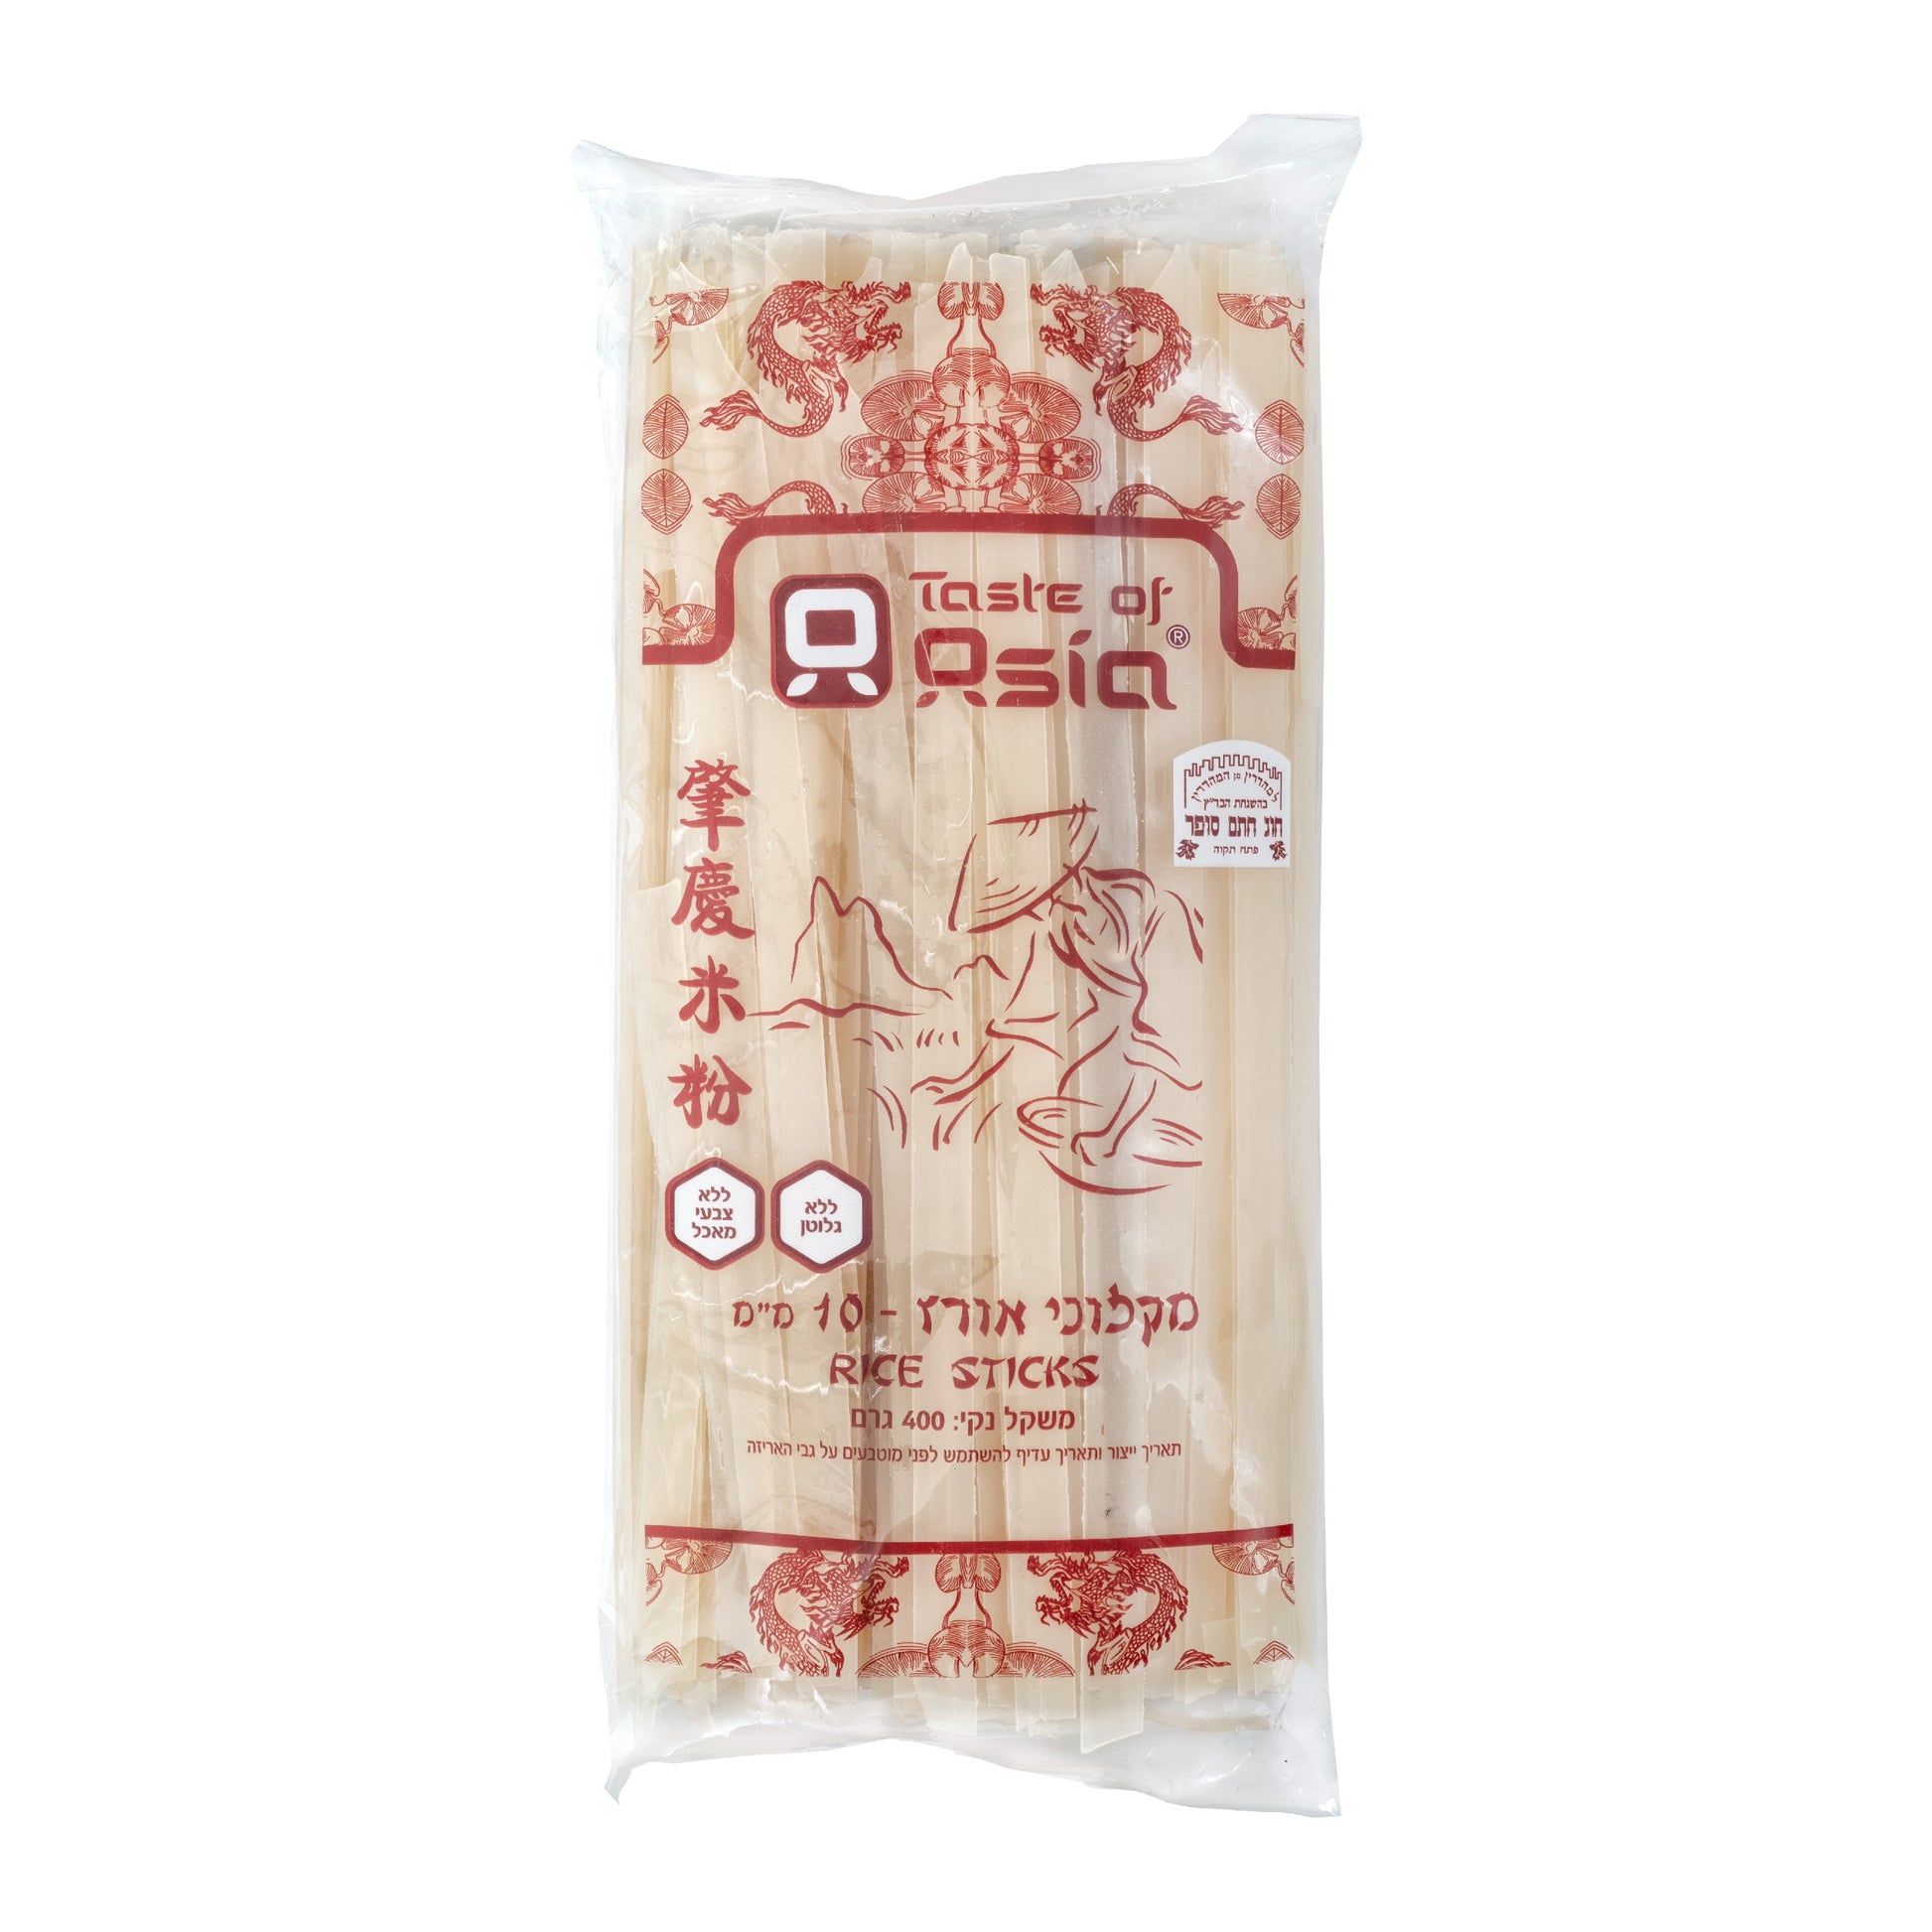 אטריות אורז ללא גלוטן 10 מ"מ | טעמי אסיה - Taste of Asia - פריקפוא